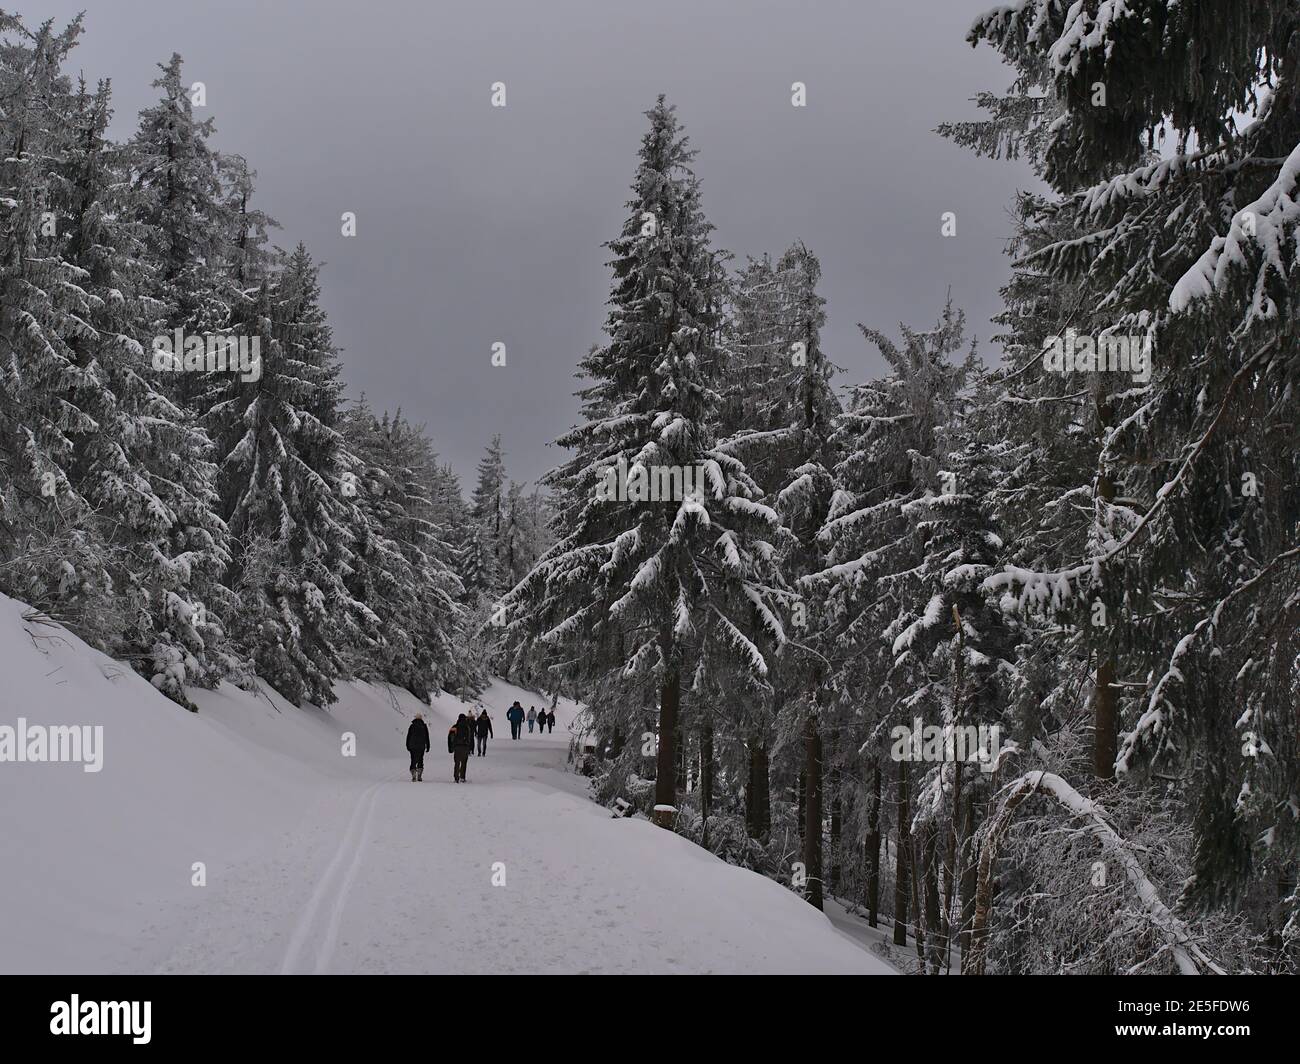 Gruppe von Menschen genießen Winterwanderung in einer wunderschönen Landschaft von schneebedeckten Wald mit gefrorenen Bäumen in der Nähe von Schliffkopf, Deutschland im Schwarzwald. Stockfoto